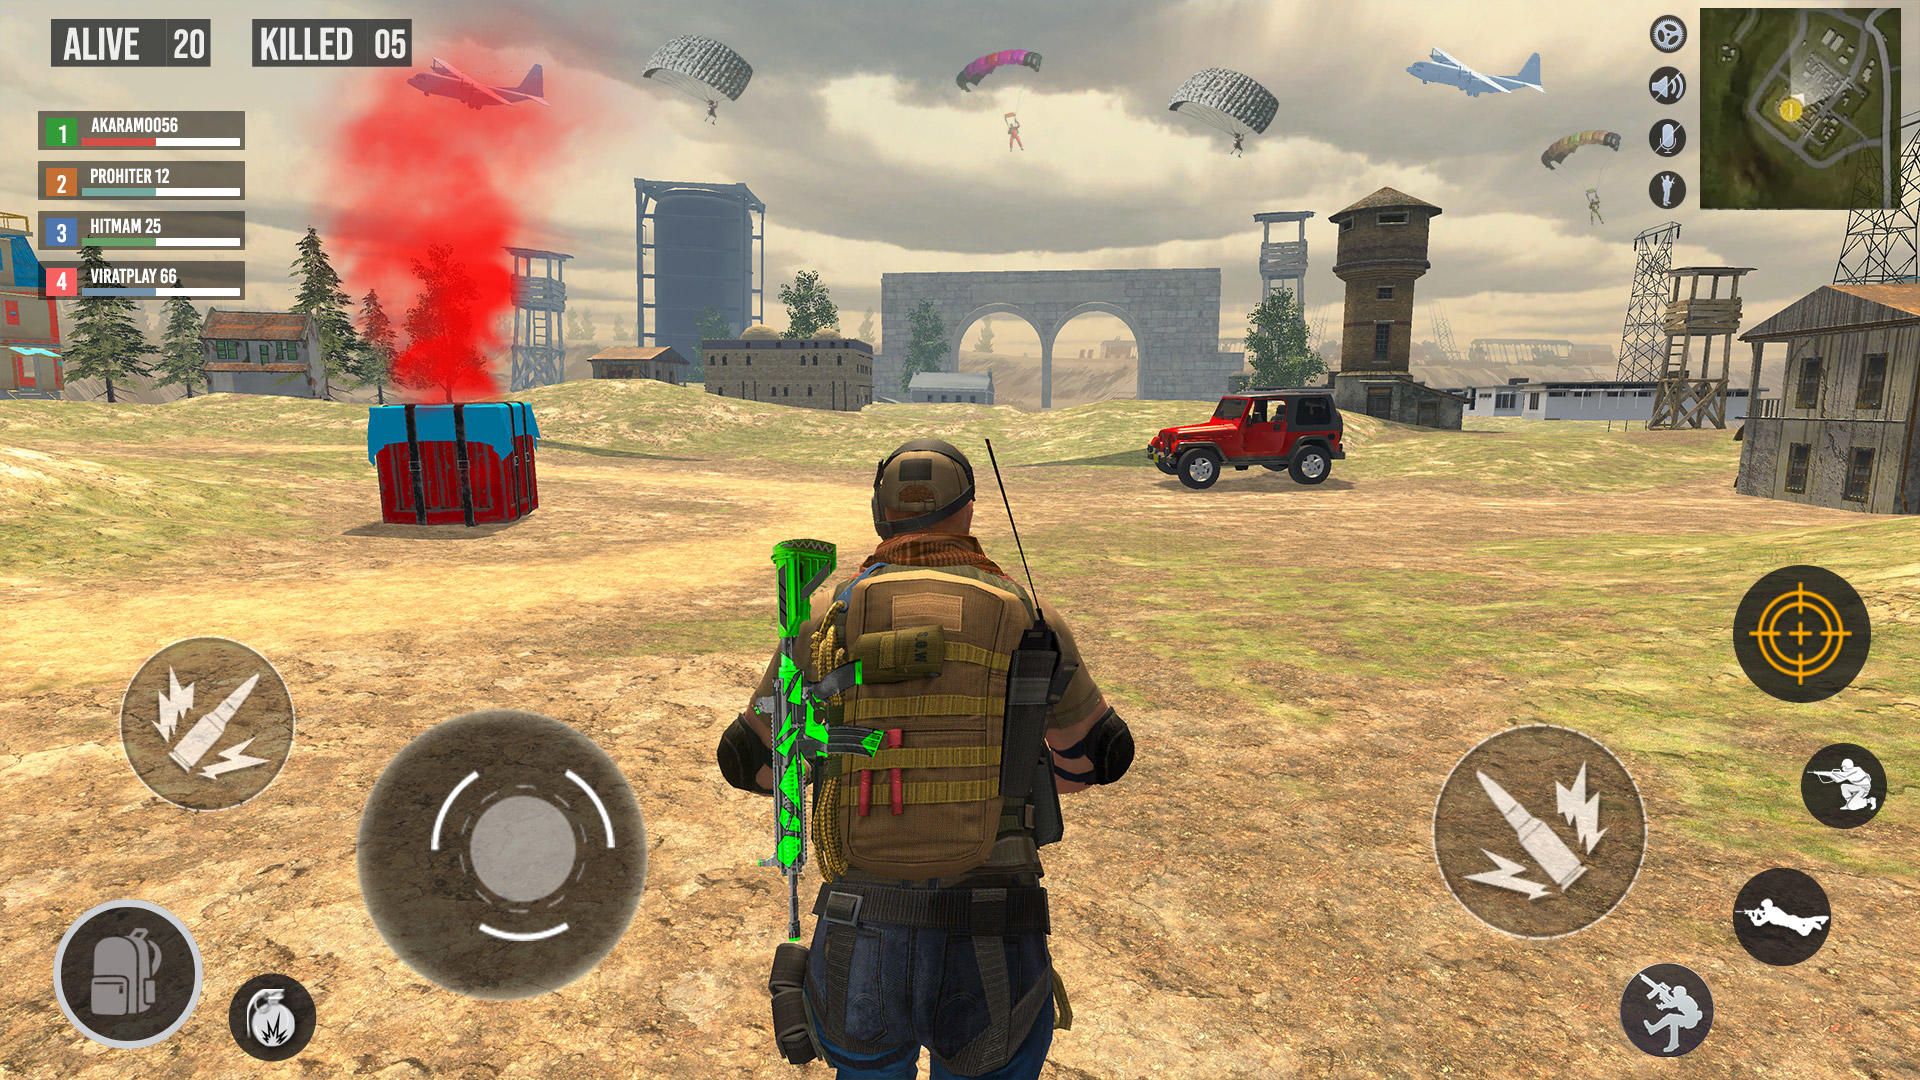 Download do APK de jogos de tiro offline de armas para Android